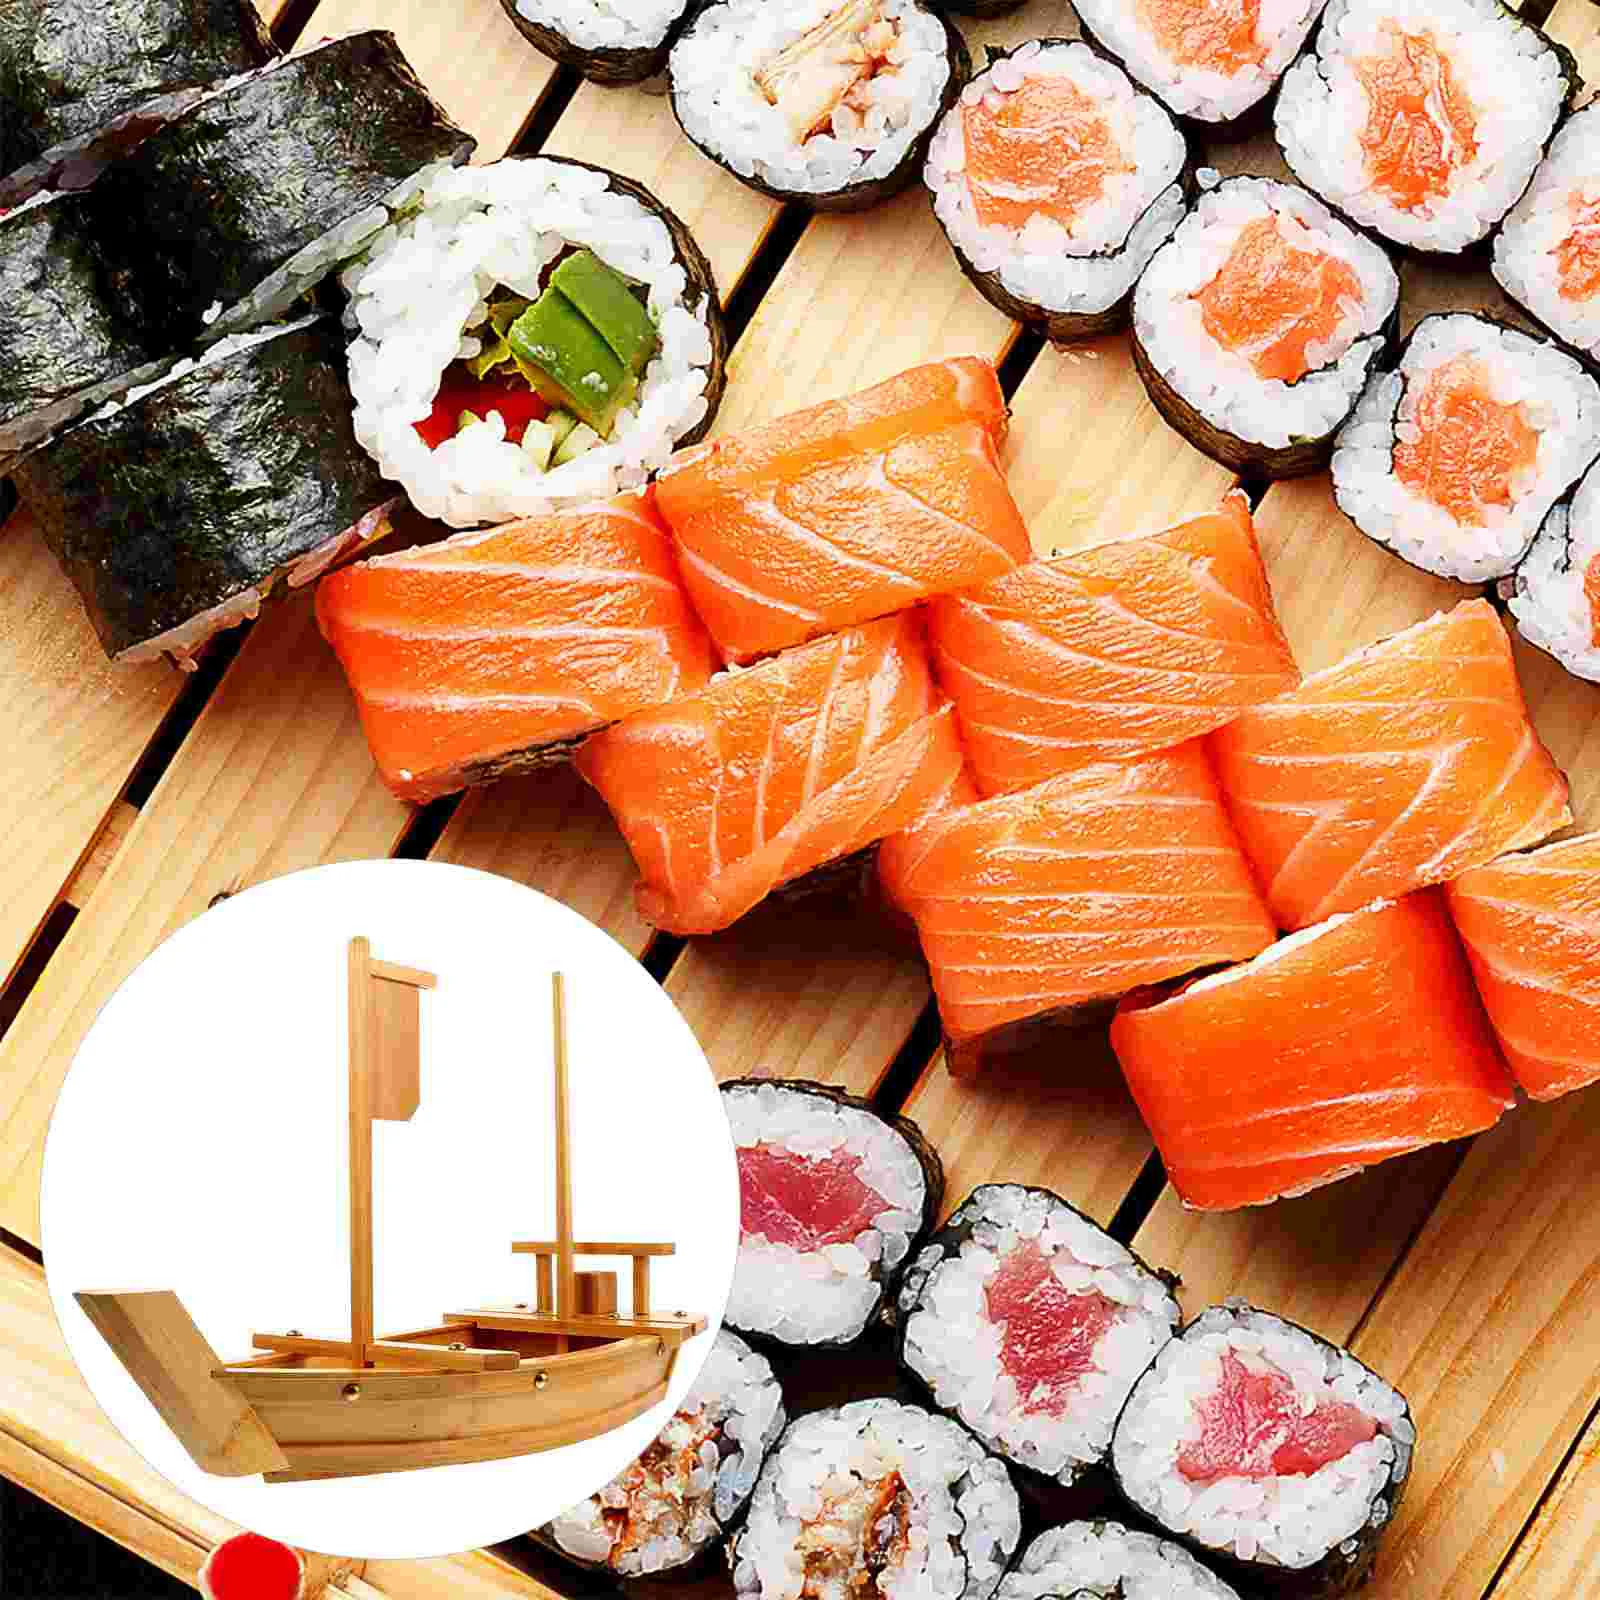 

Тарелка для суши, деревянный поднос в форме лодки, бамбуковое блюдо в японском и корейском стиле, блюдо для сашими